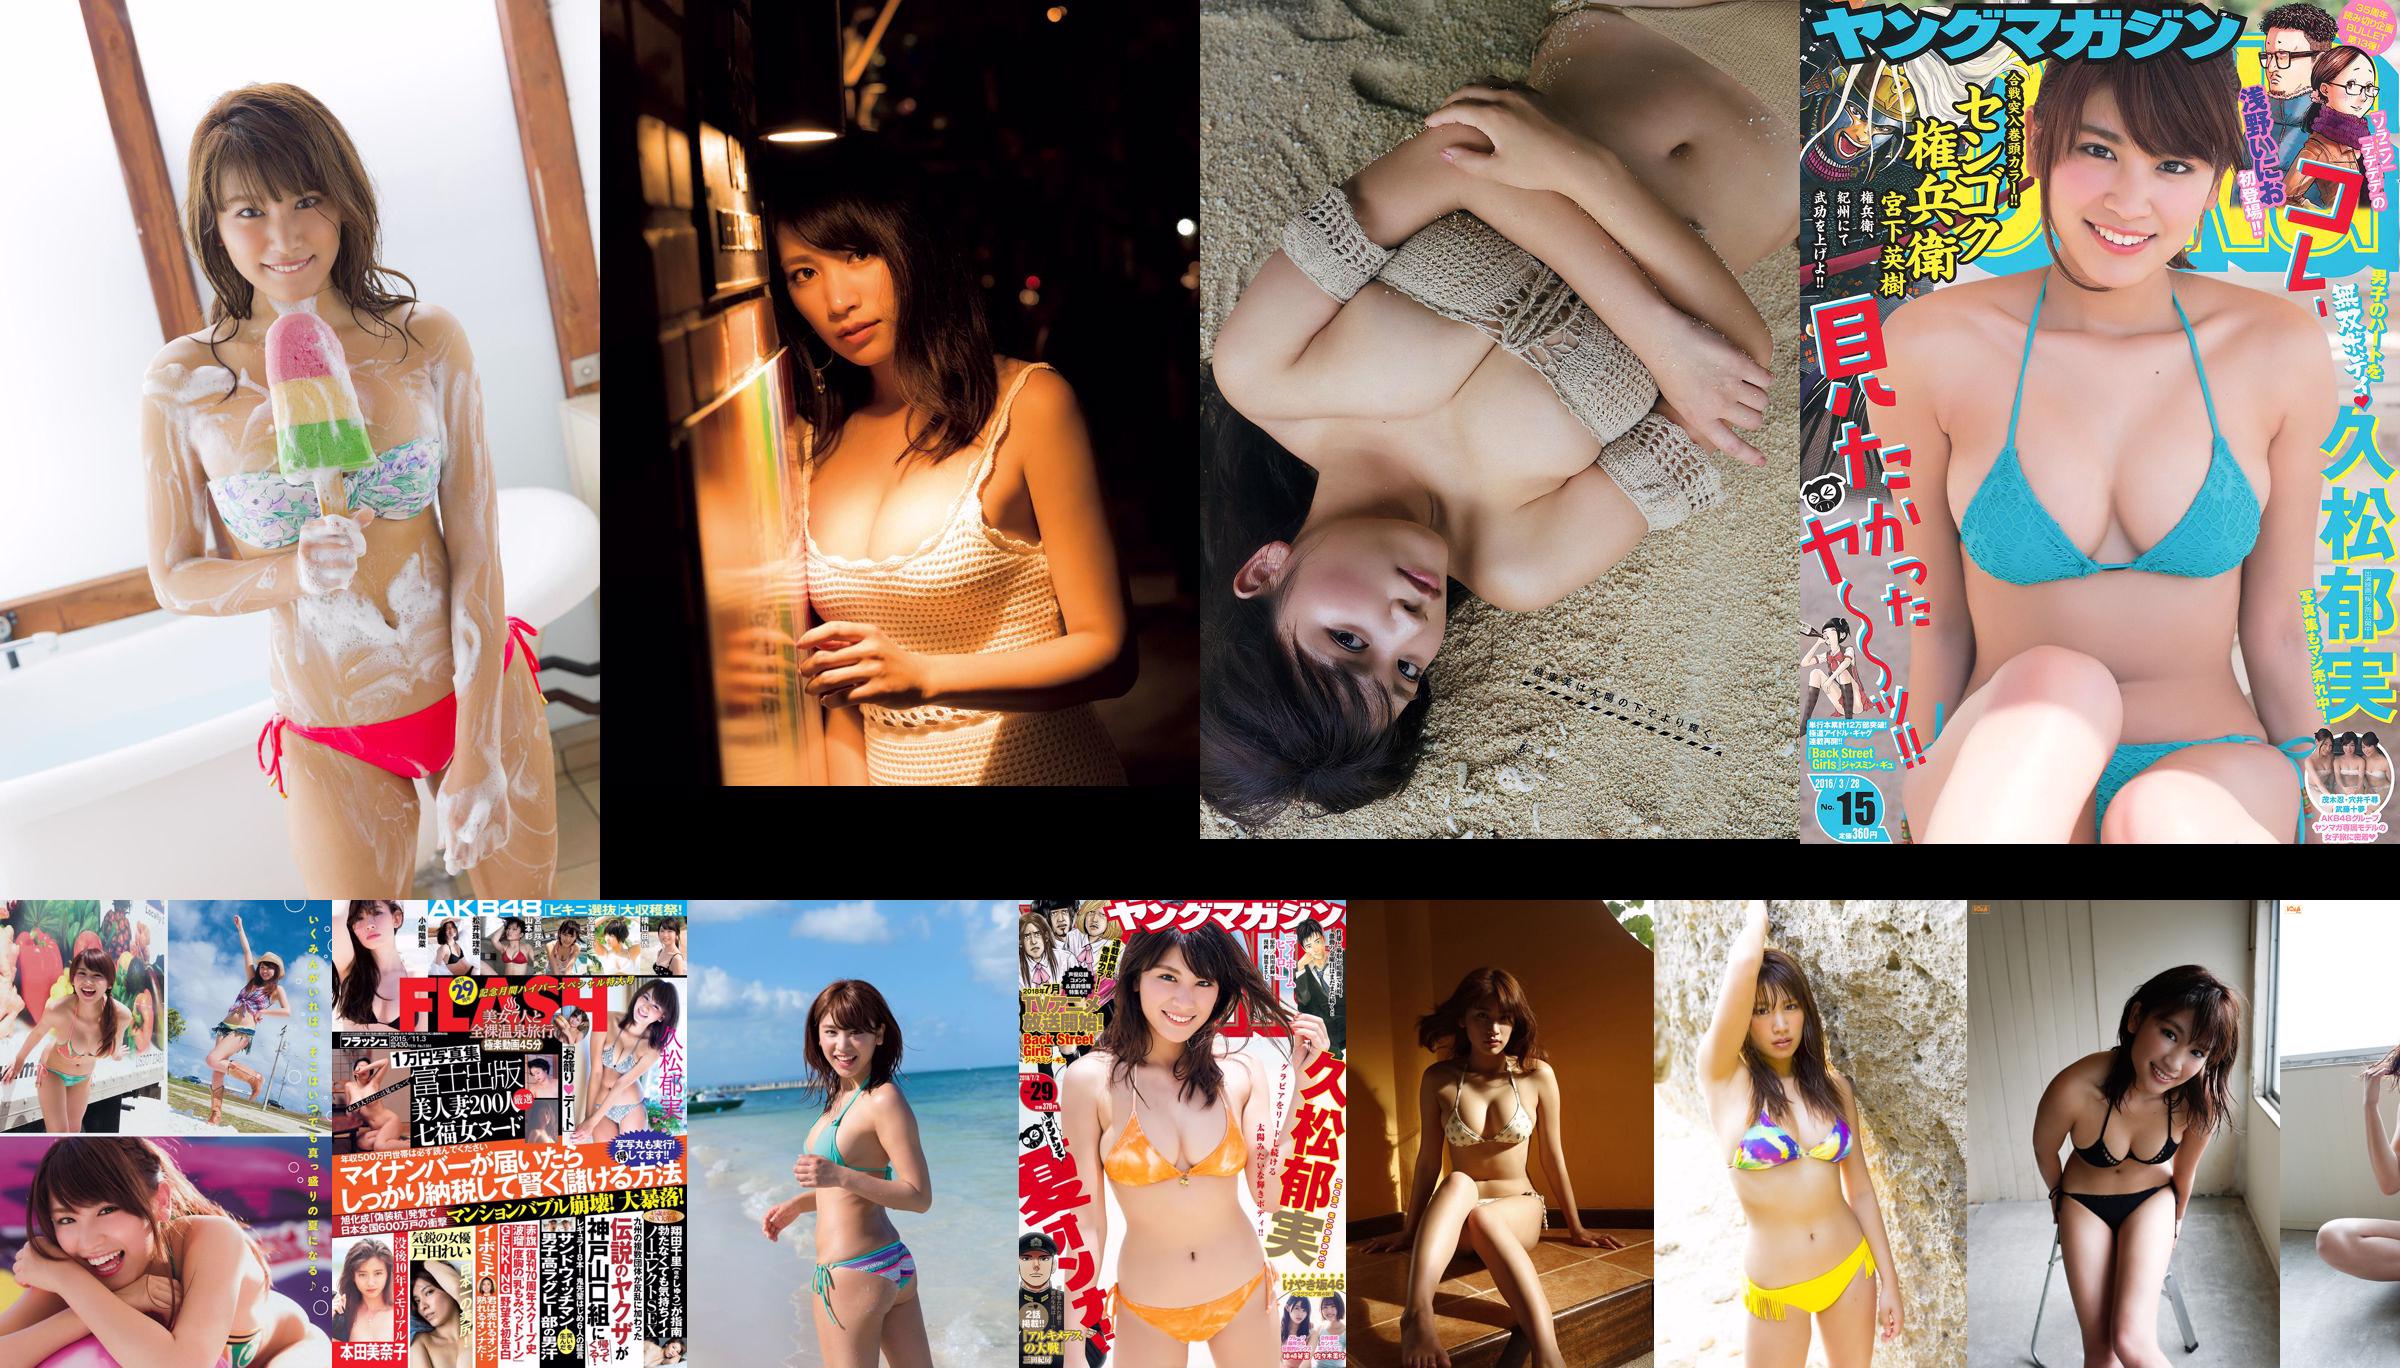 久松鬱純白石麥子Arisa Komiya Misumi Shiochi Aya Kawasaki Nogizaka46 [Weekly Playboy] 2017 No.08照片 No.3584e1 第1頁